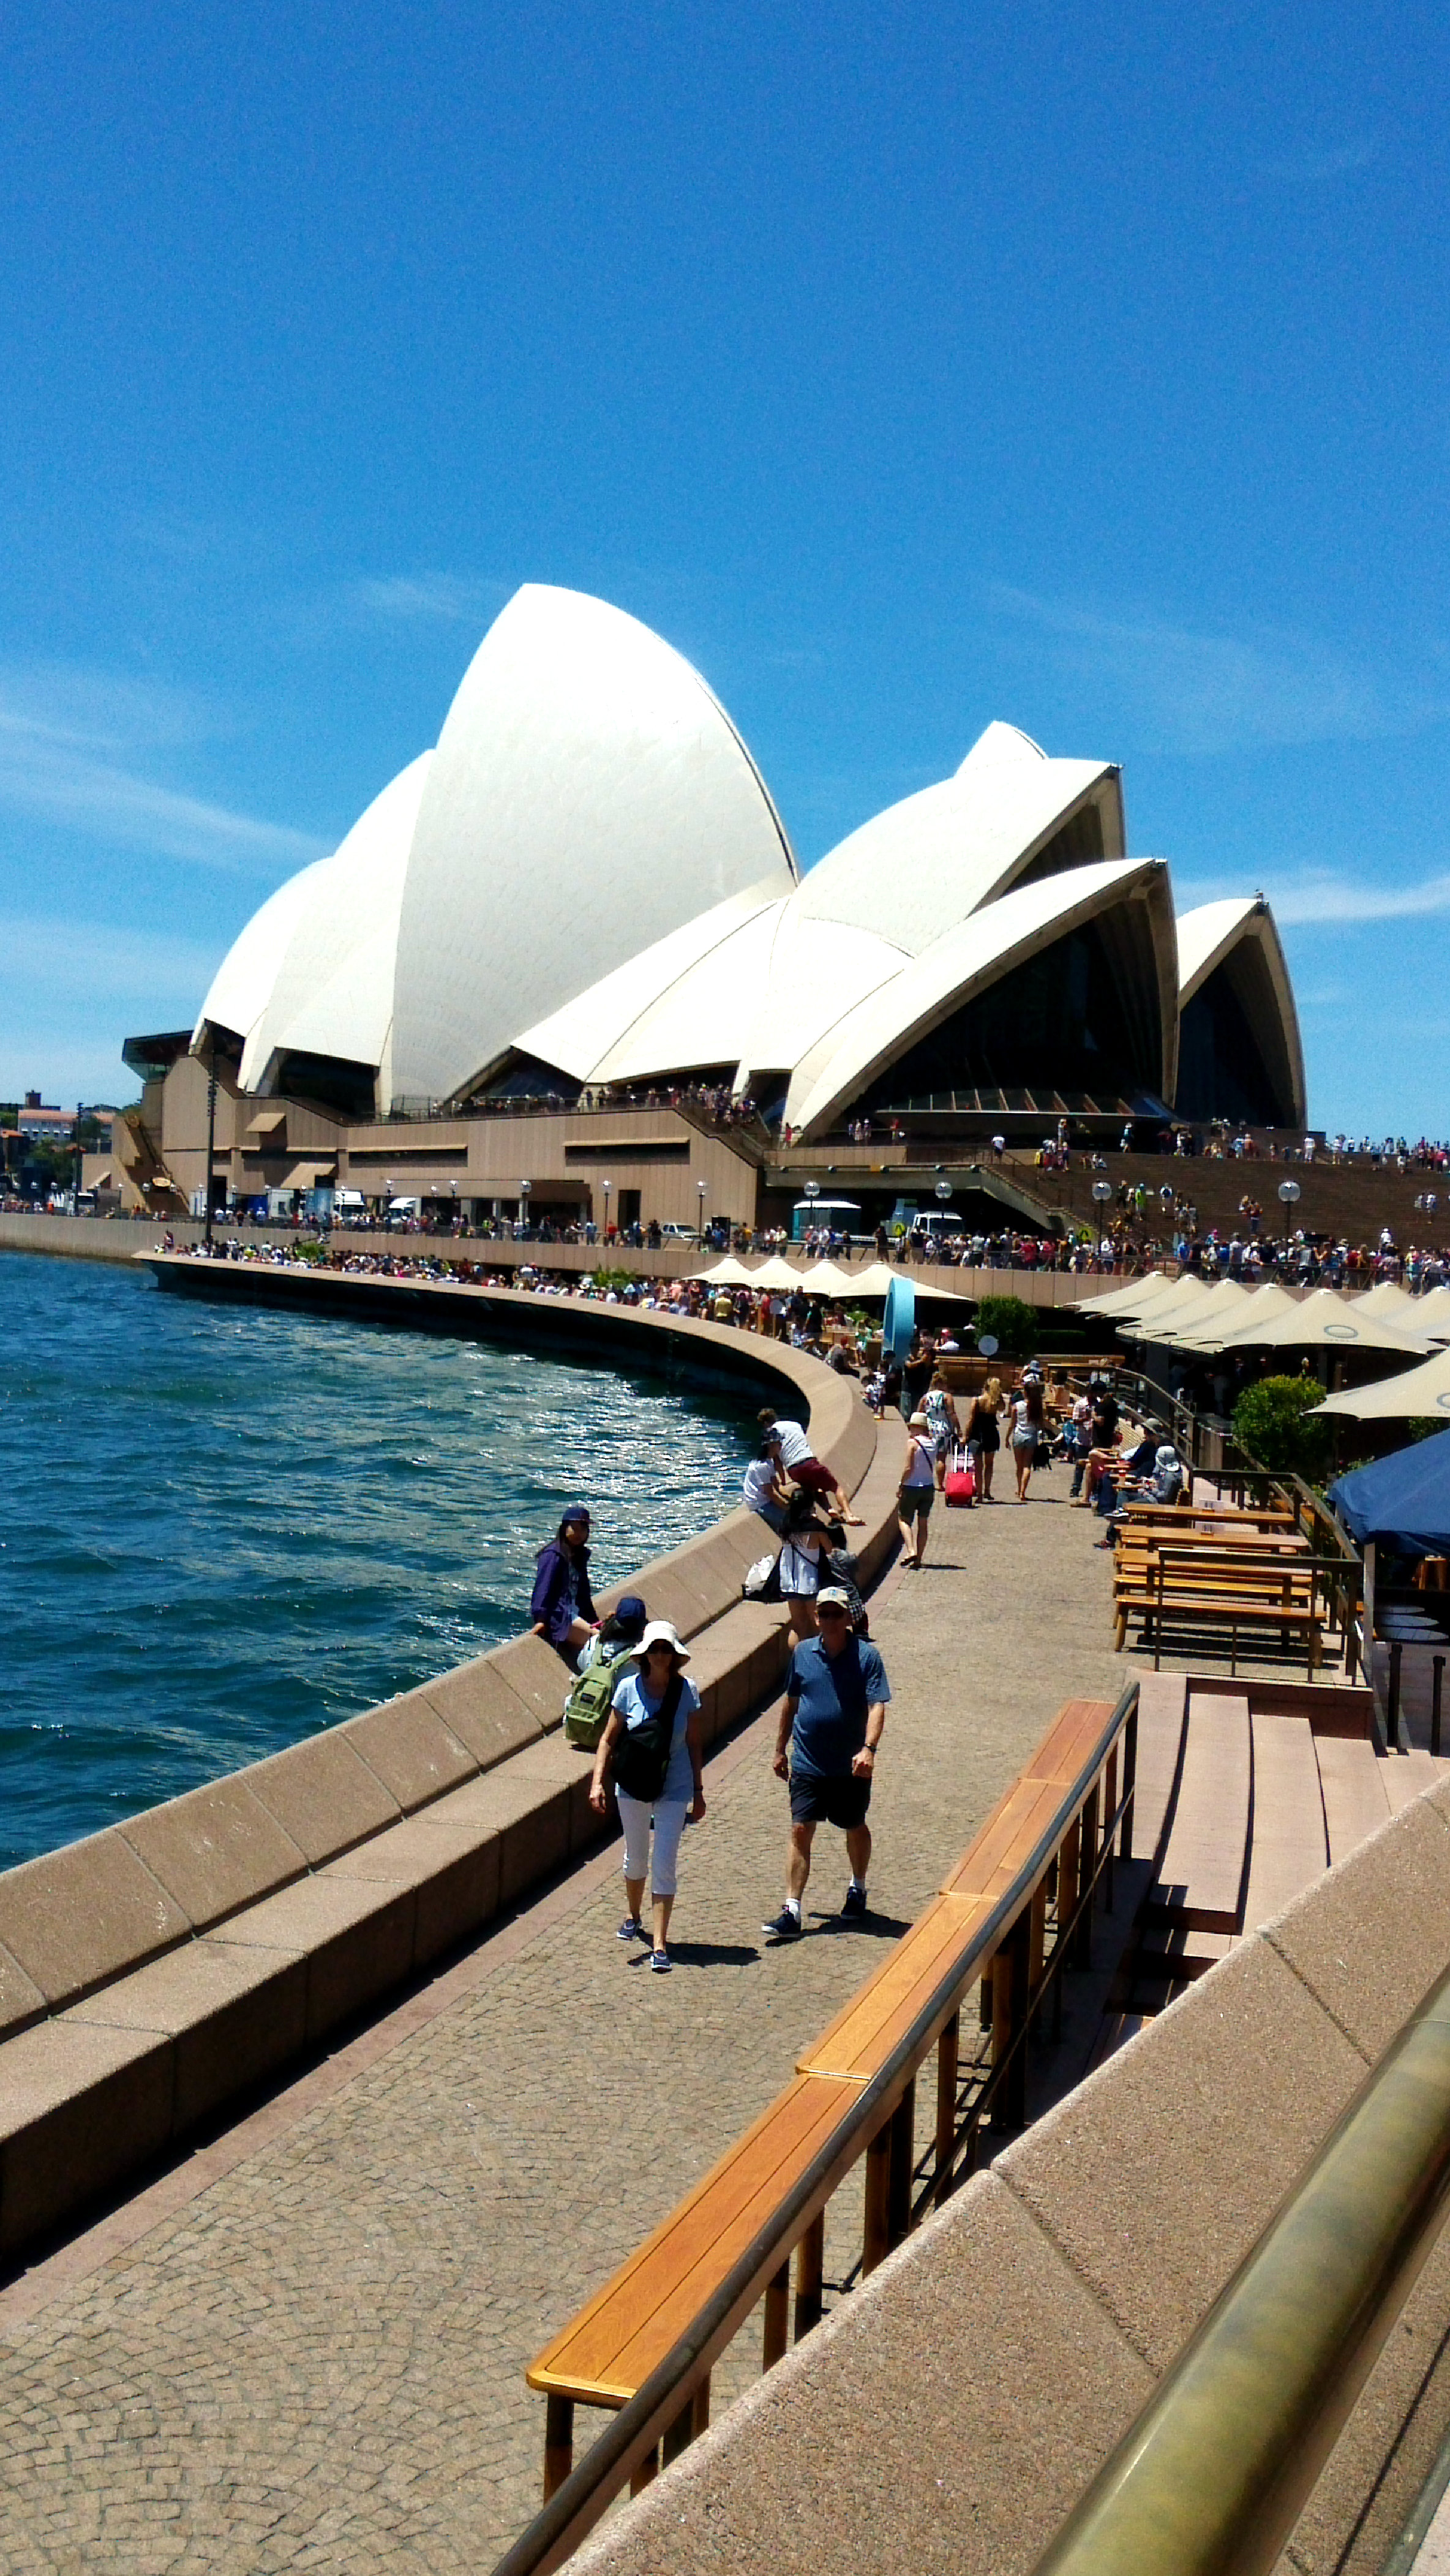 城市风光 风景名胜 澳大利亚 悉尼歌剧院桌面壁纸壁纸(风景静态壁纸) - 静态壁纸下载 - 元气壁纸